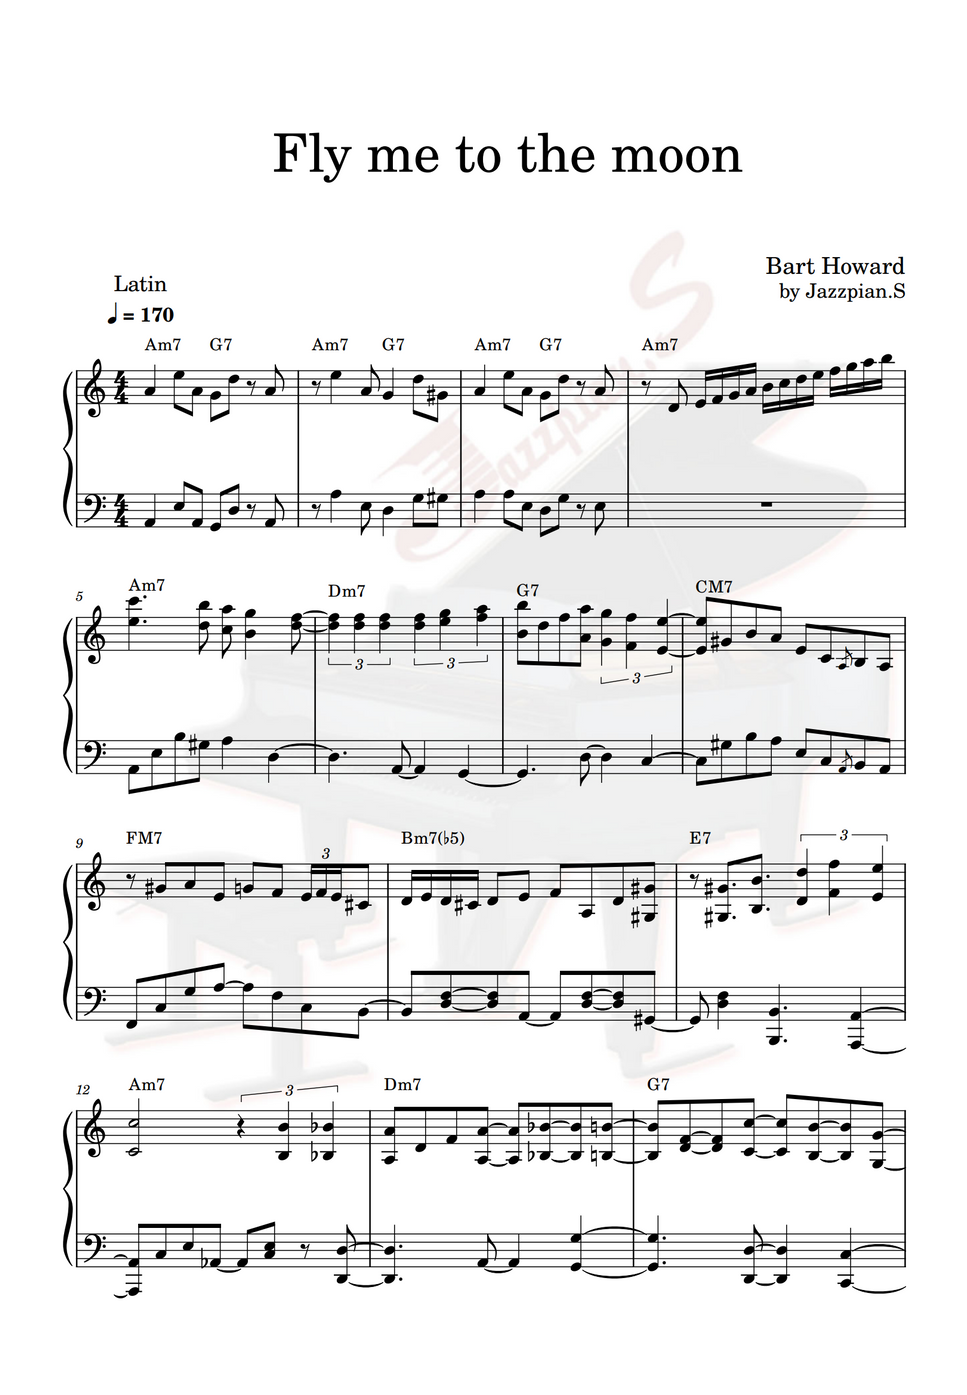 Bart Howard Fly me to the moon Latin jazz piano by Jazzpian S Sheet